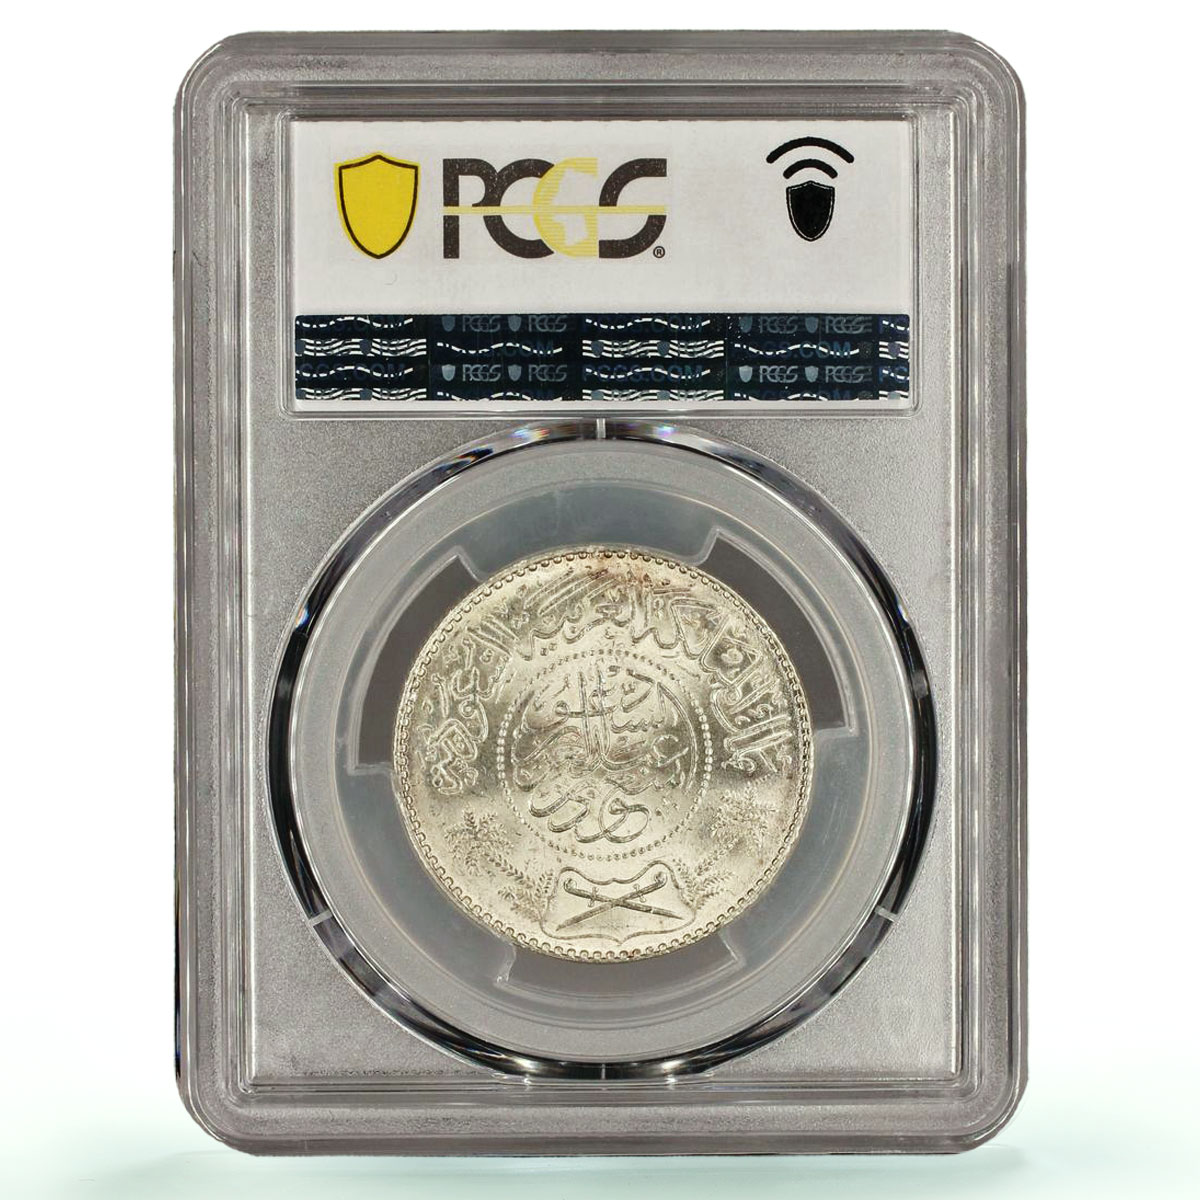 Saudi Arabia 1 riyal Regular Coinage Abdulaziz KM-39 MS65 PCGS silver coin 1954